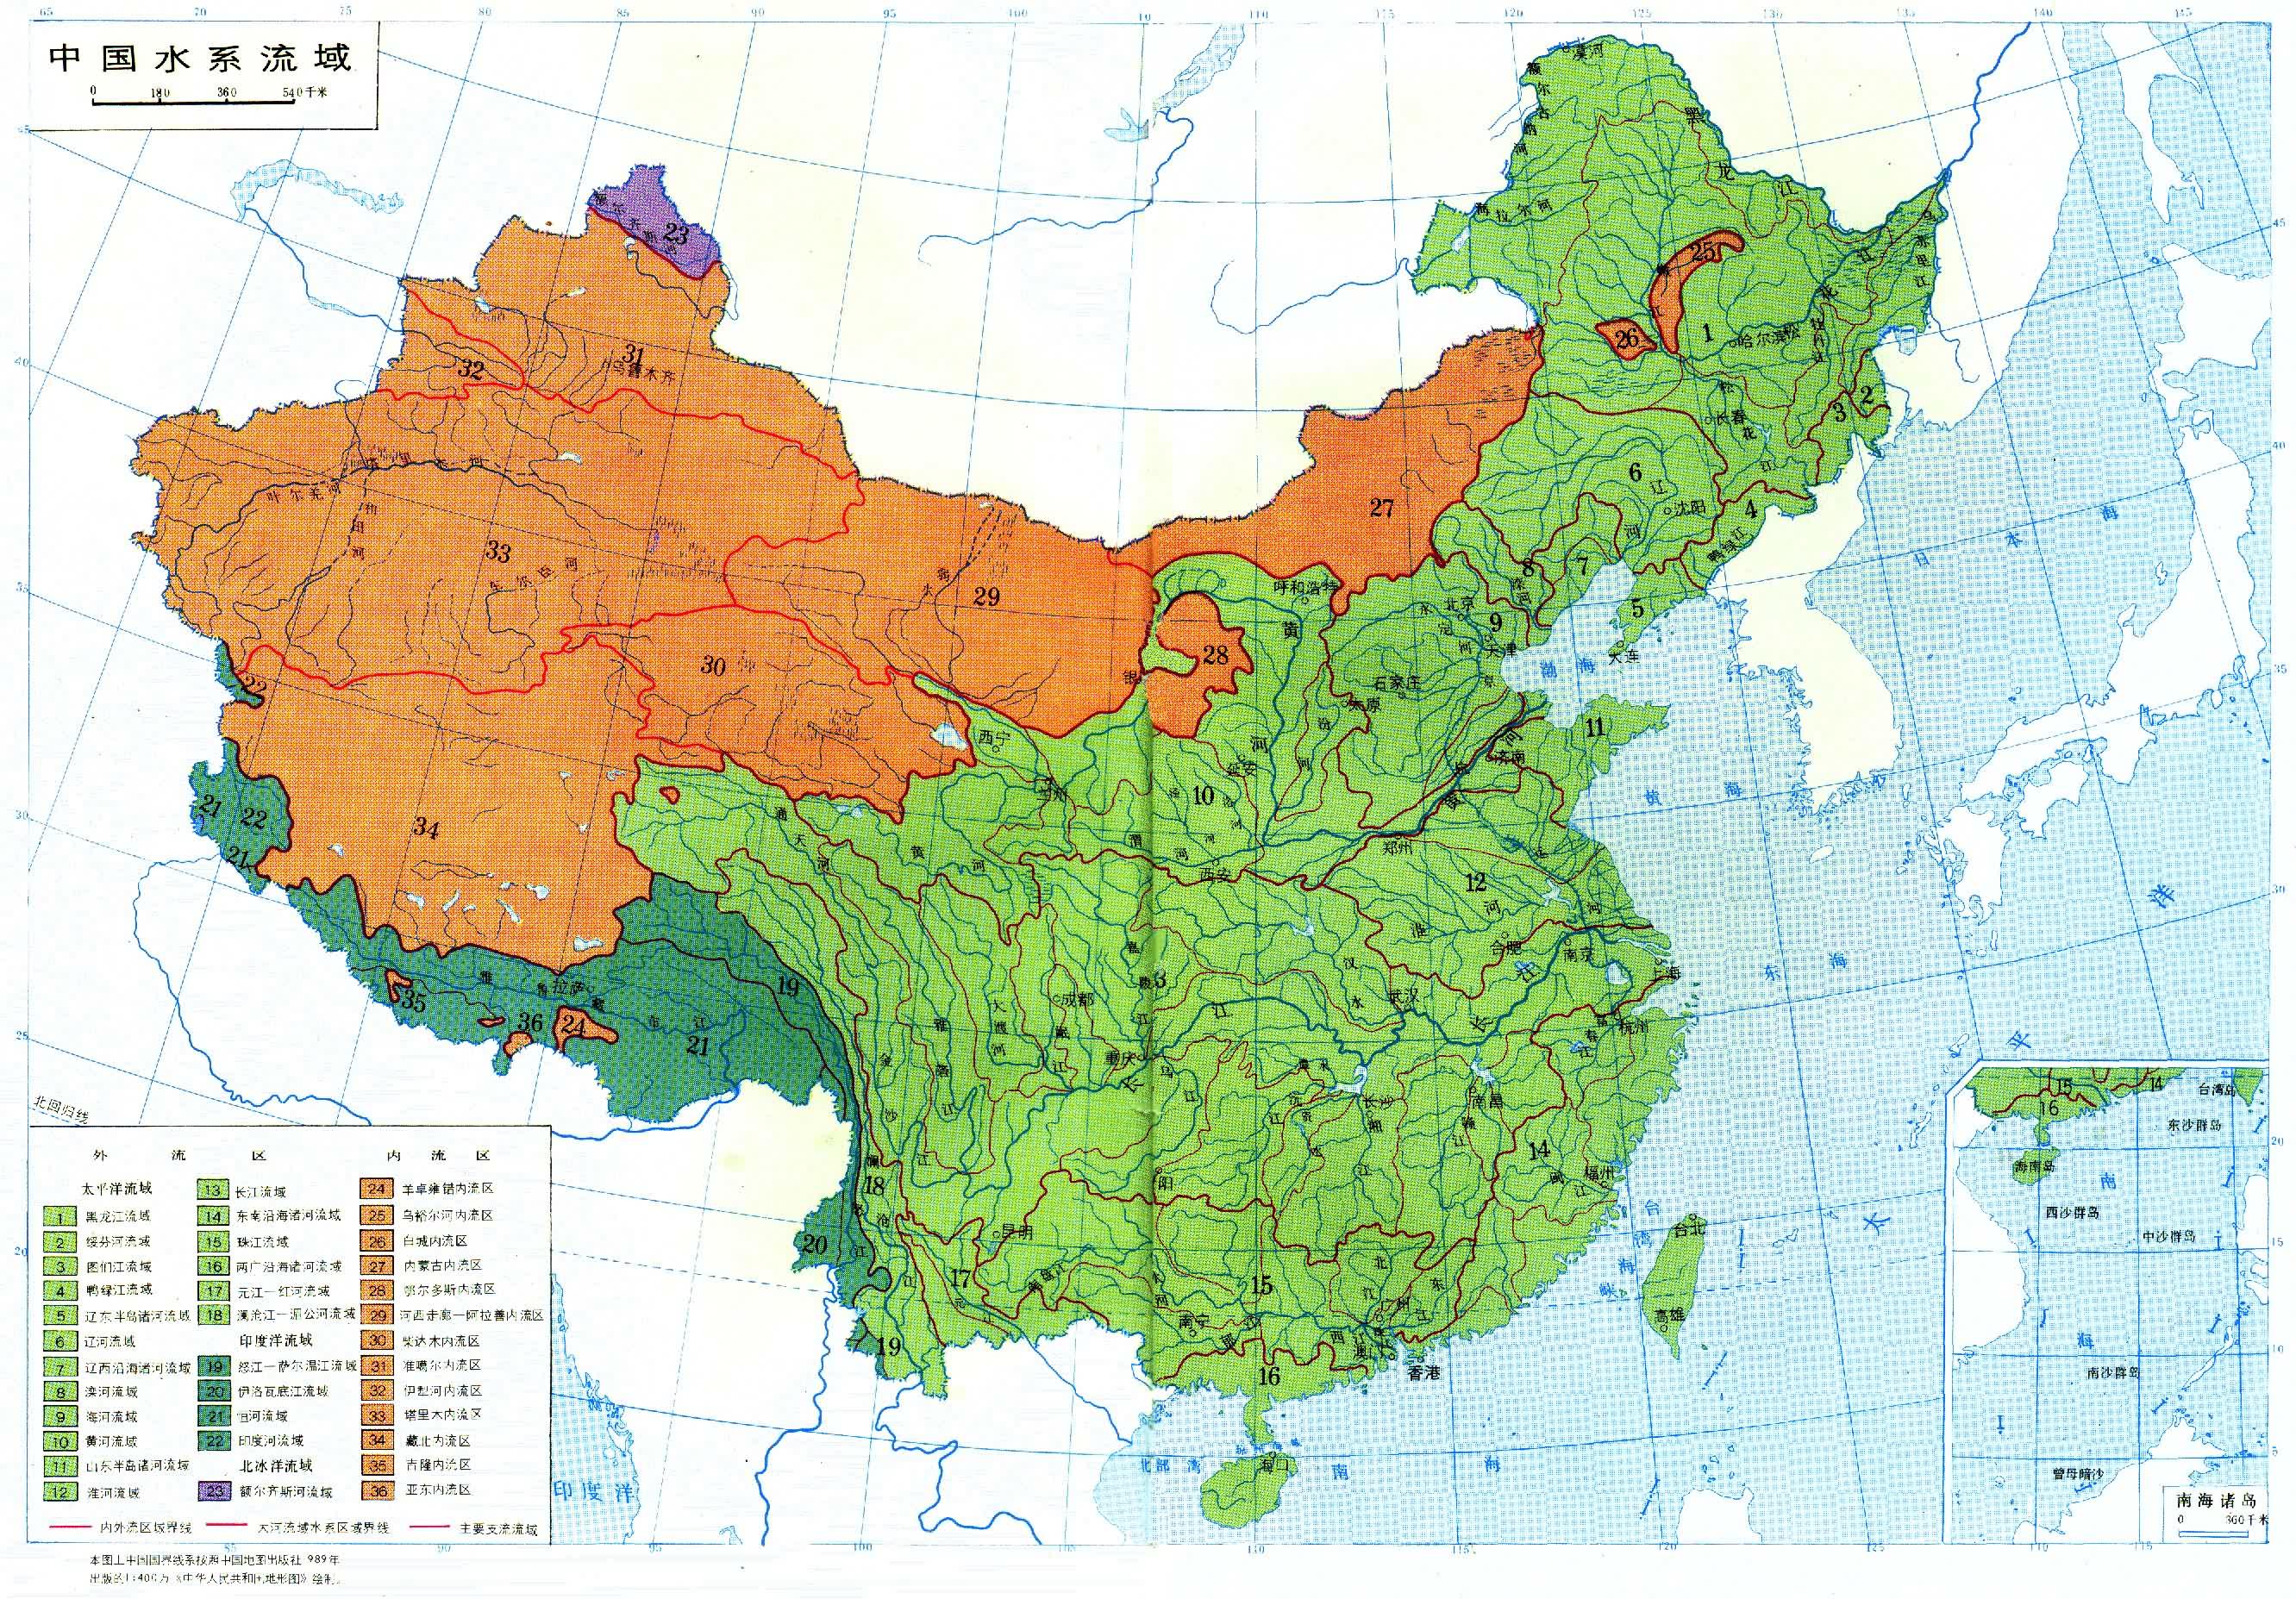 中国水资源